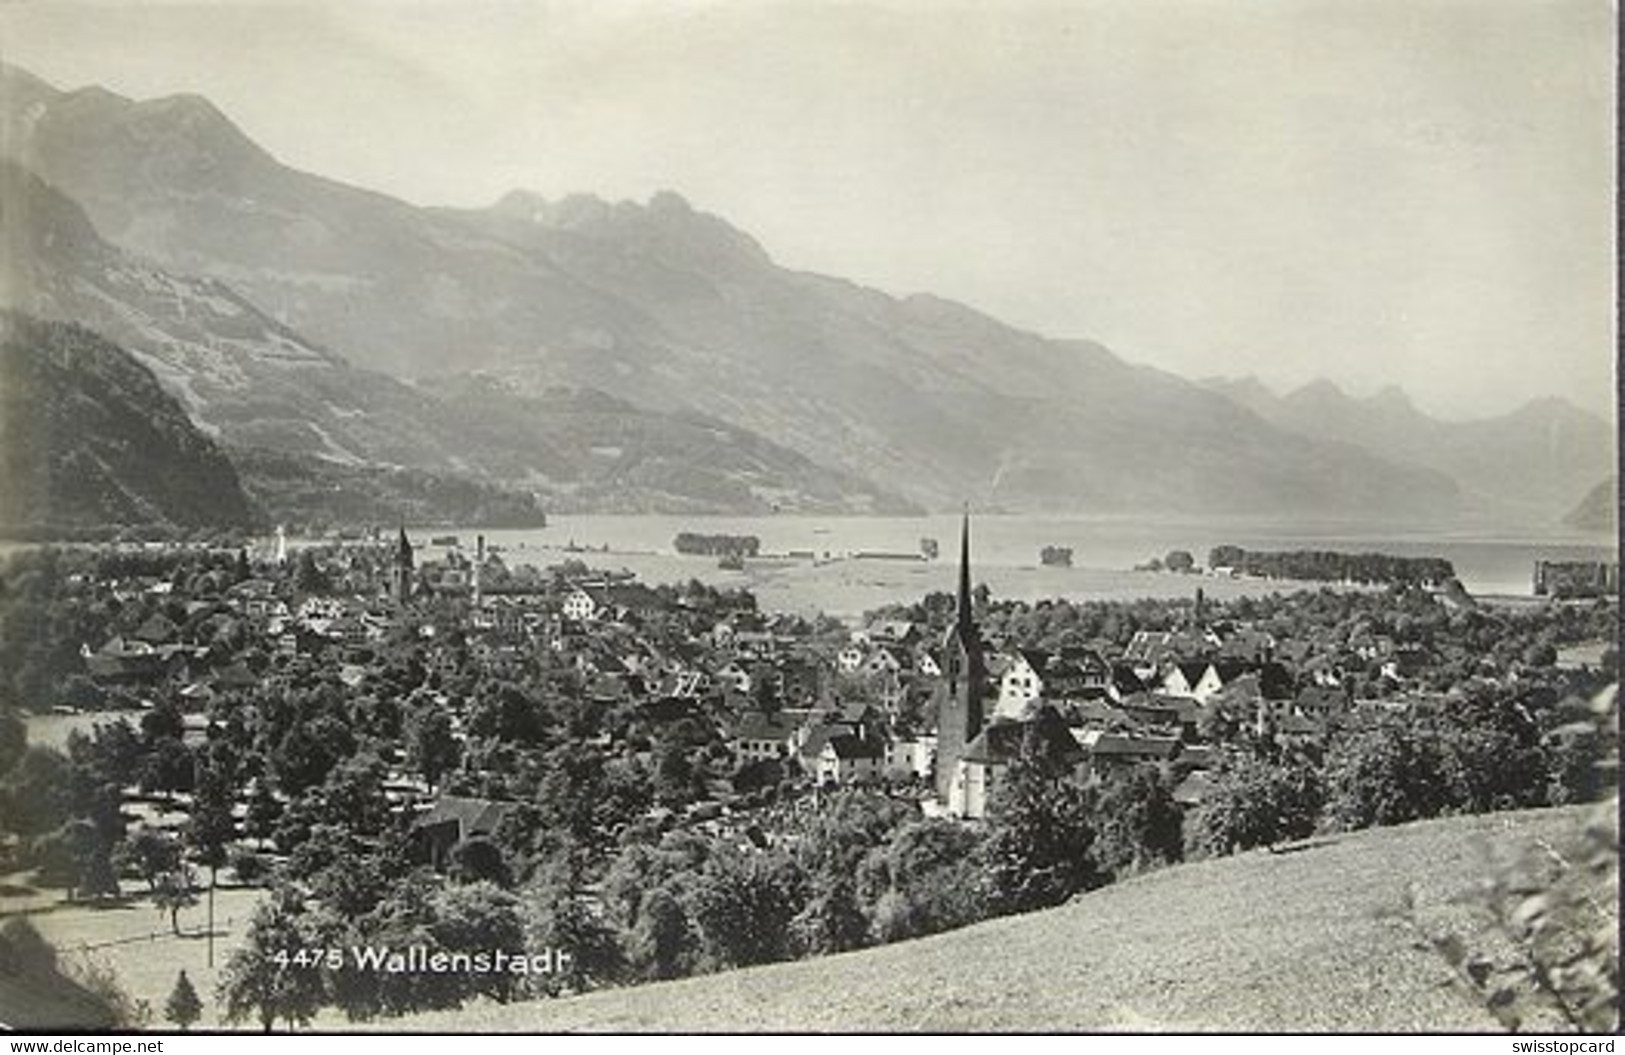 WALENSTADT 1925 No. 4475 - Walenstadt